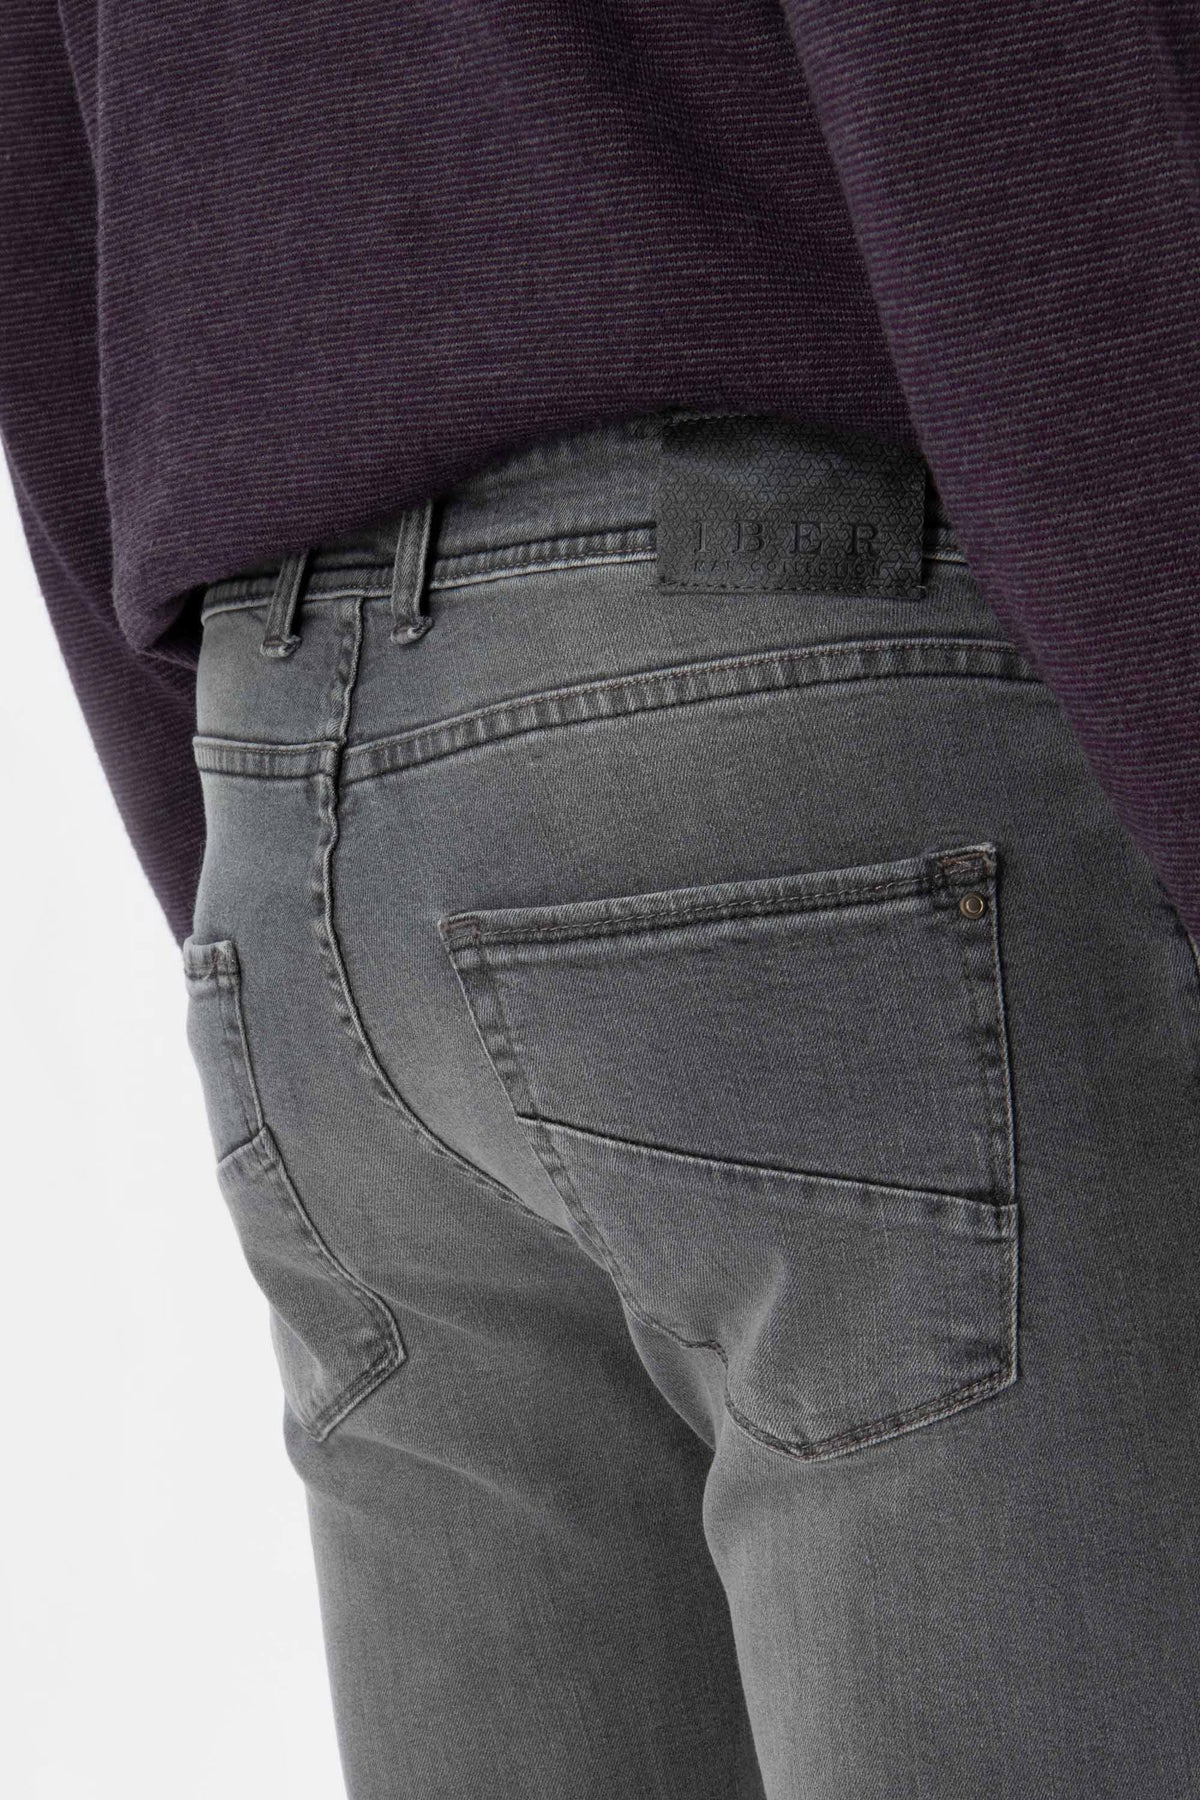 Maikol Nc23 Jeans in denim grigio di cotone stretch